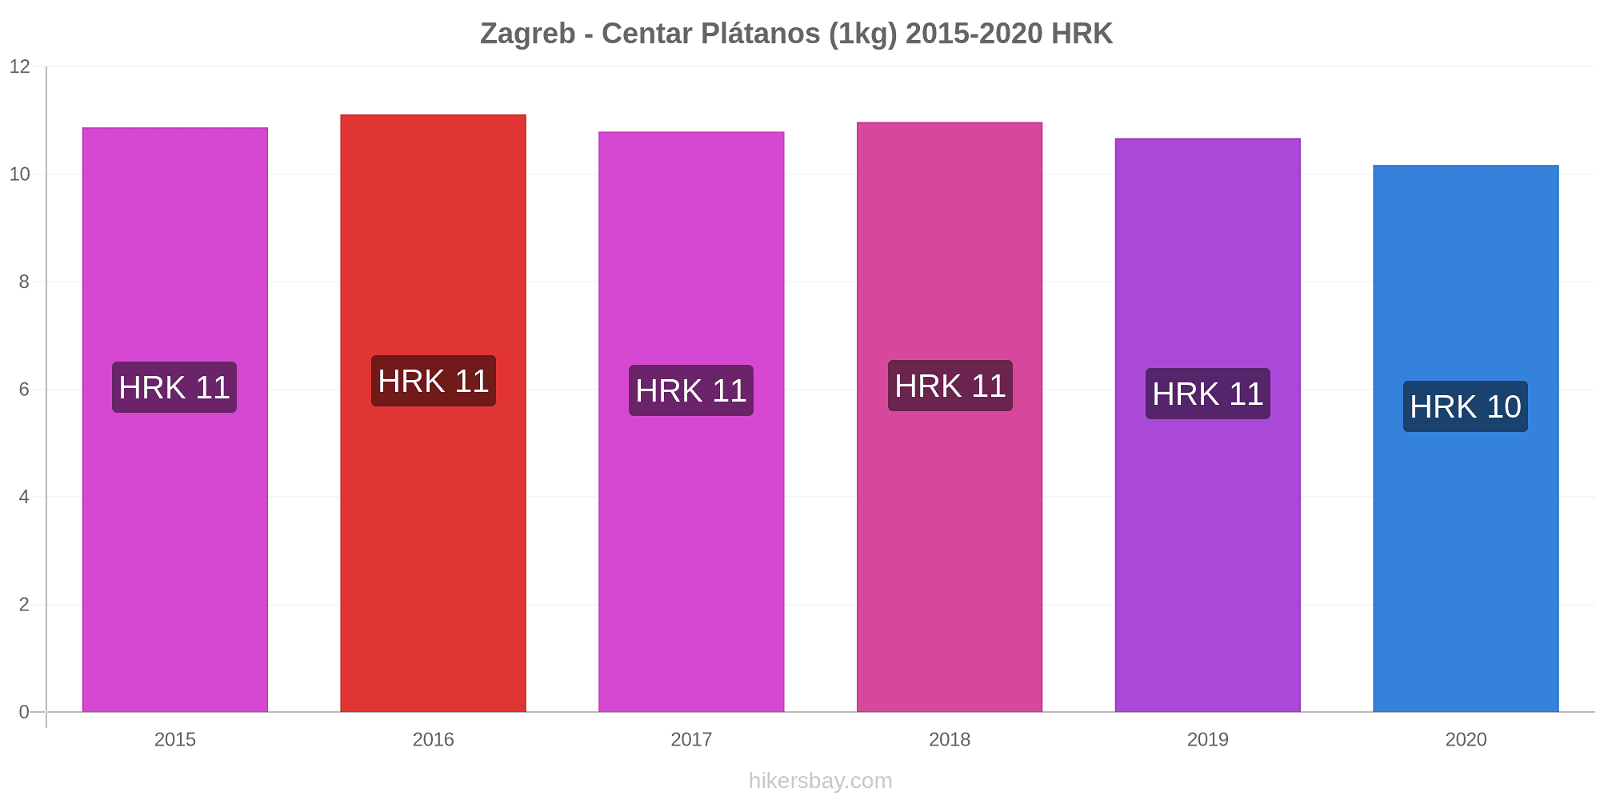 Zagreb - Centar cambios de precios Plátano (1kg) hikersbay.com